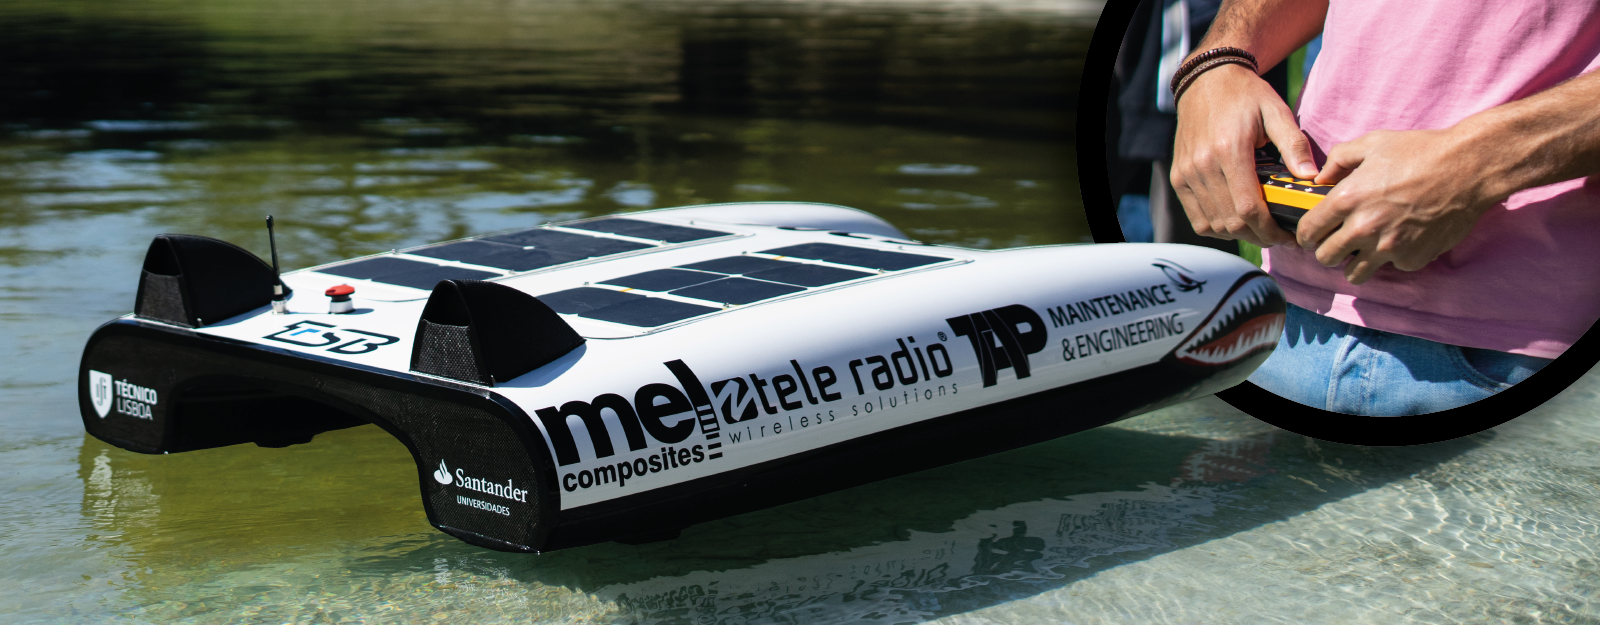 Tecnico Solar Boat ft Tele Radio sponsorship